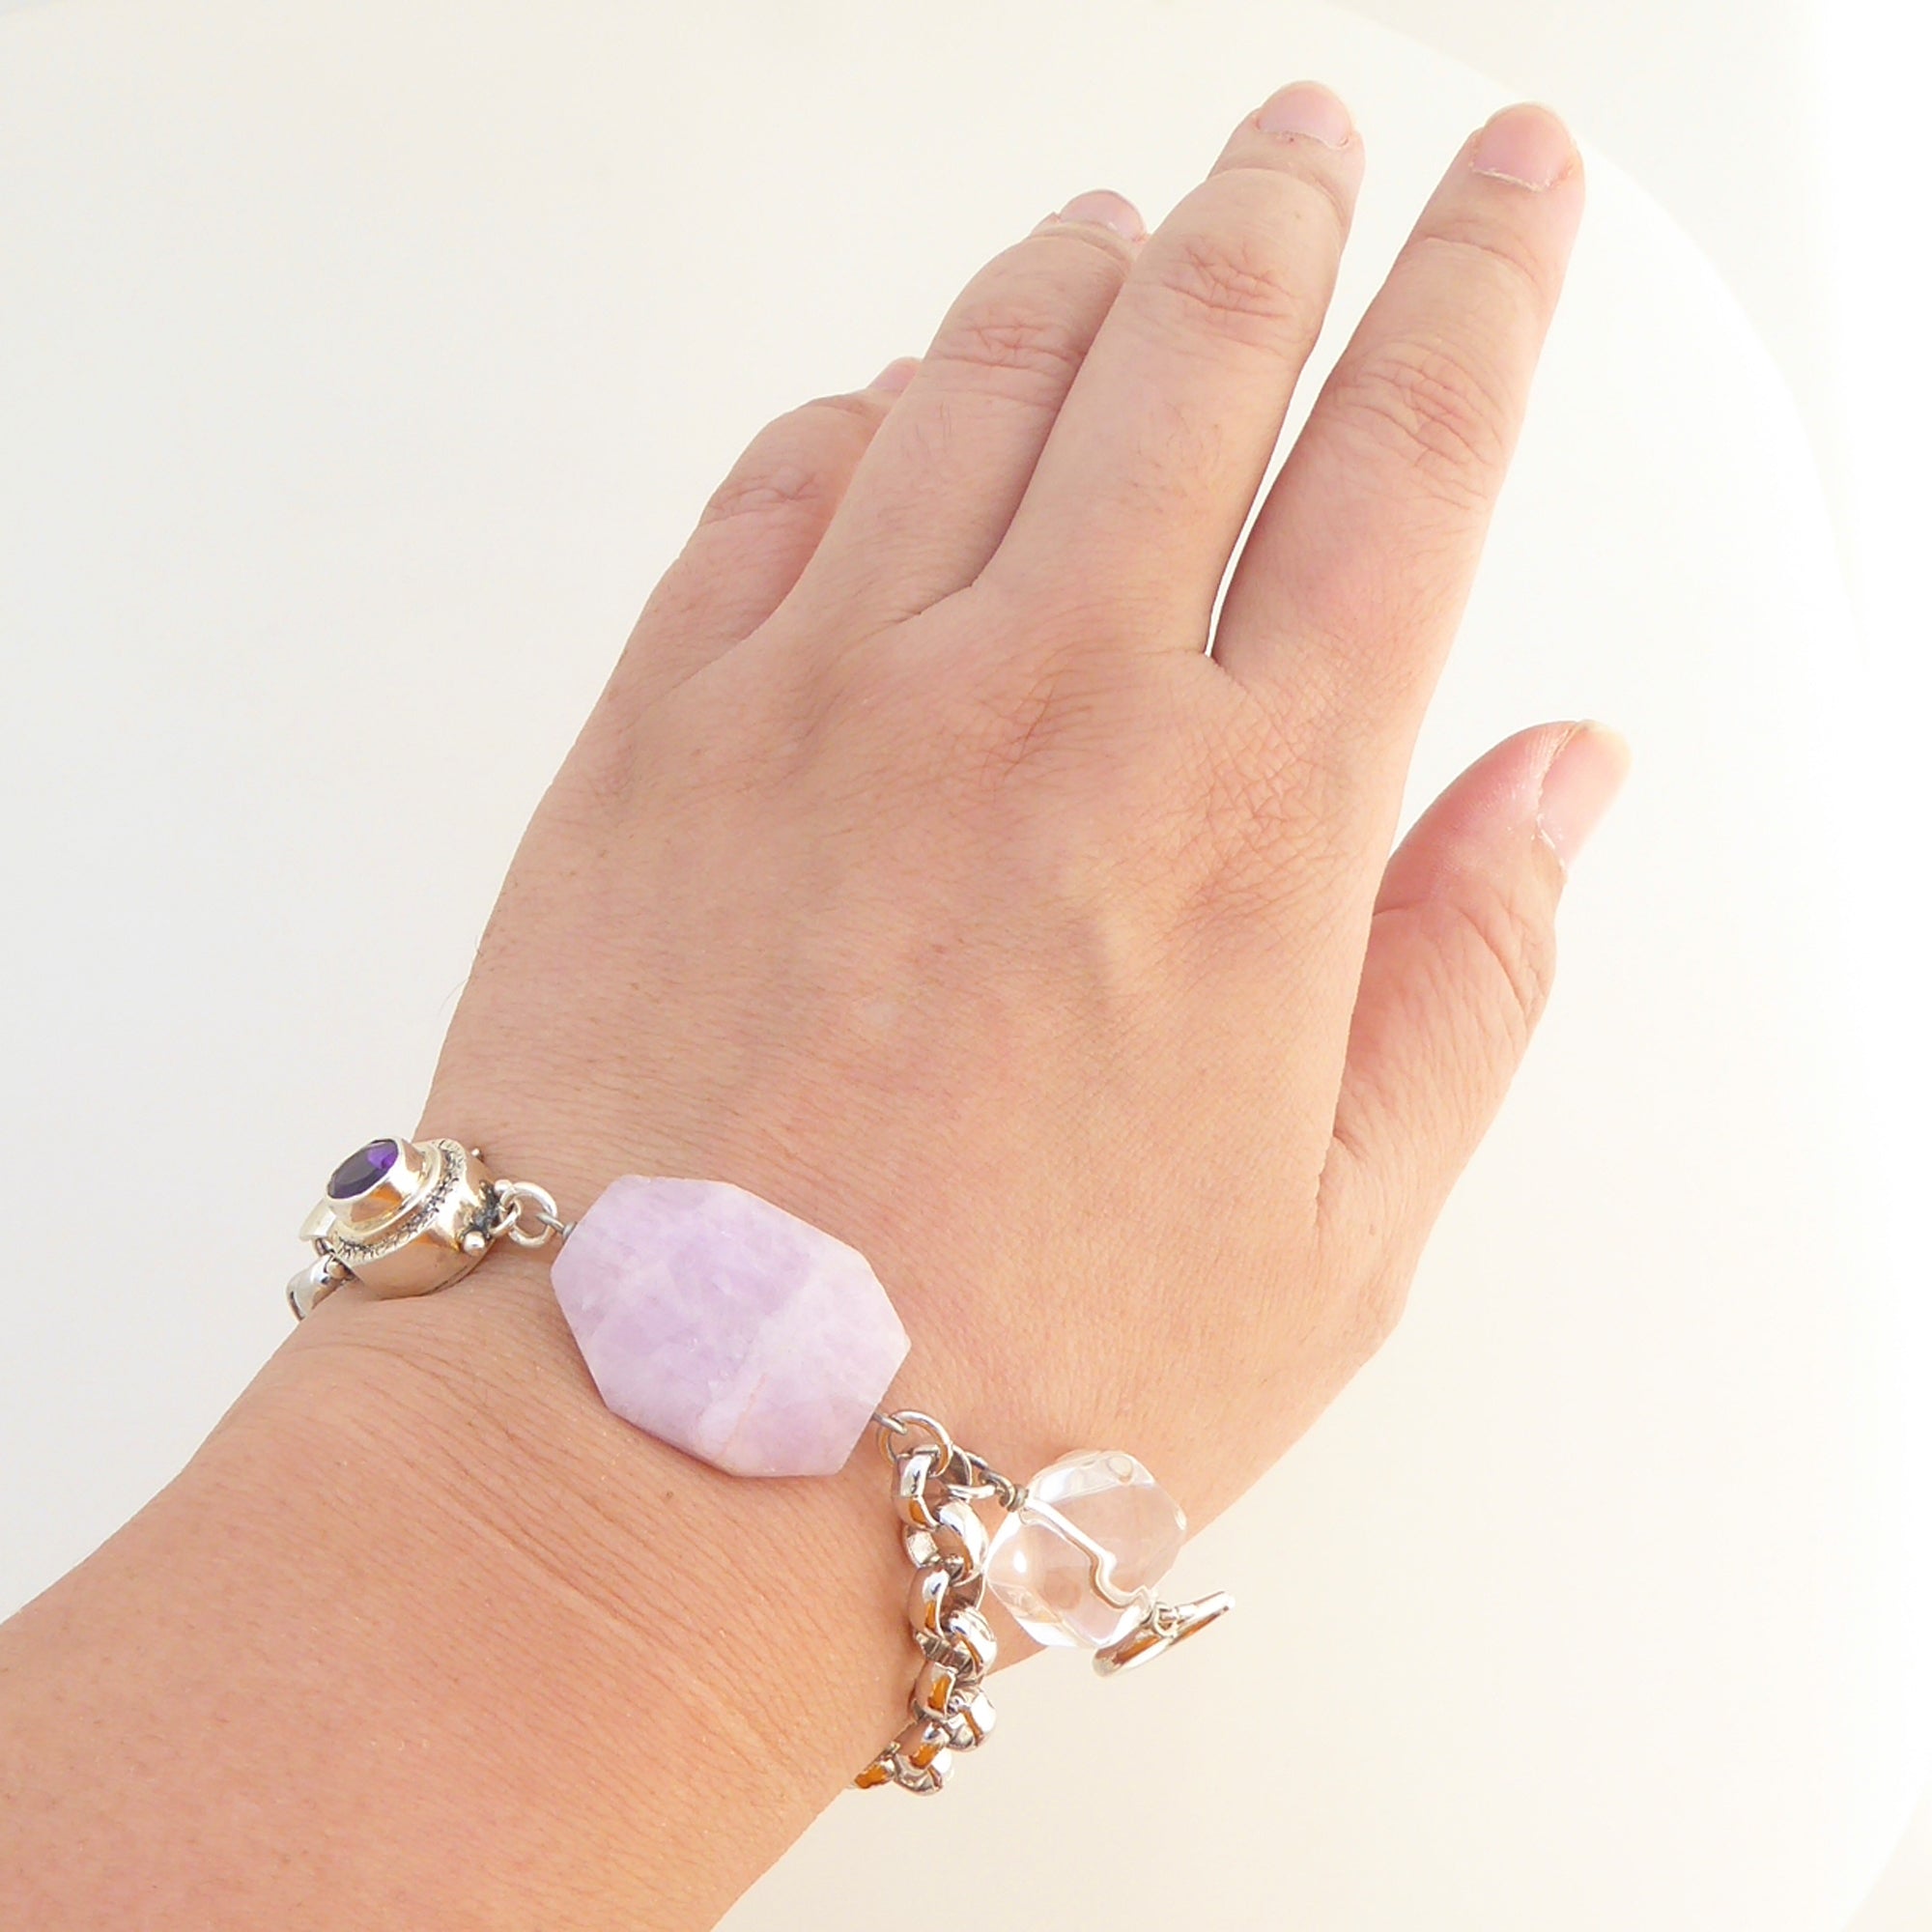 Pink kunzite and silver moon bracelet by Jenny Dayco 5